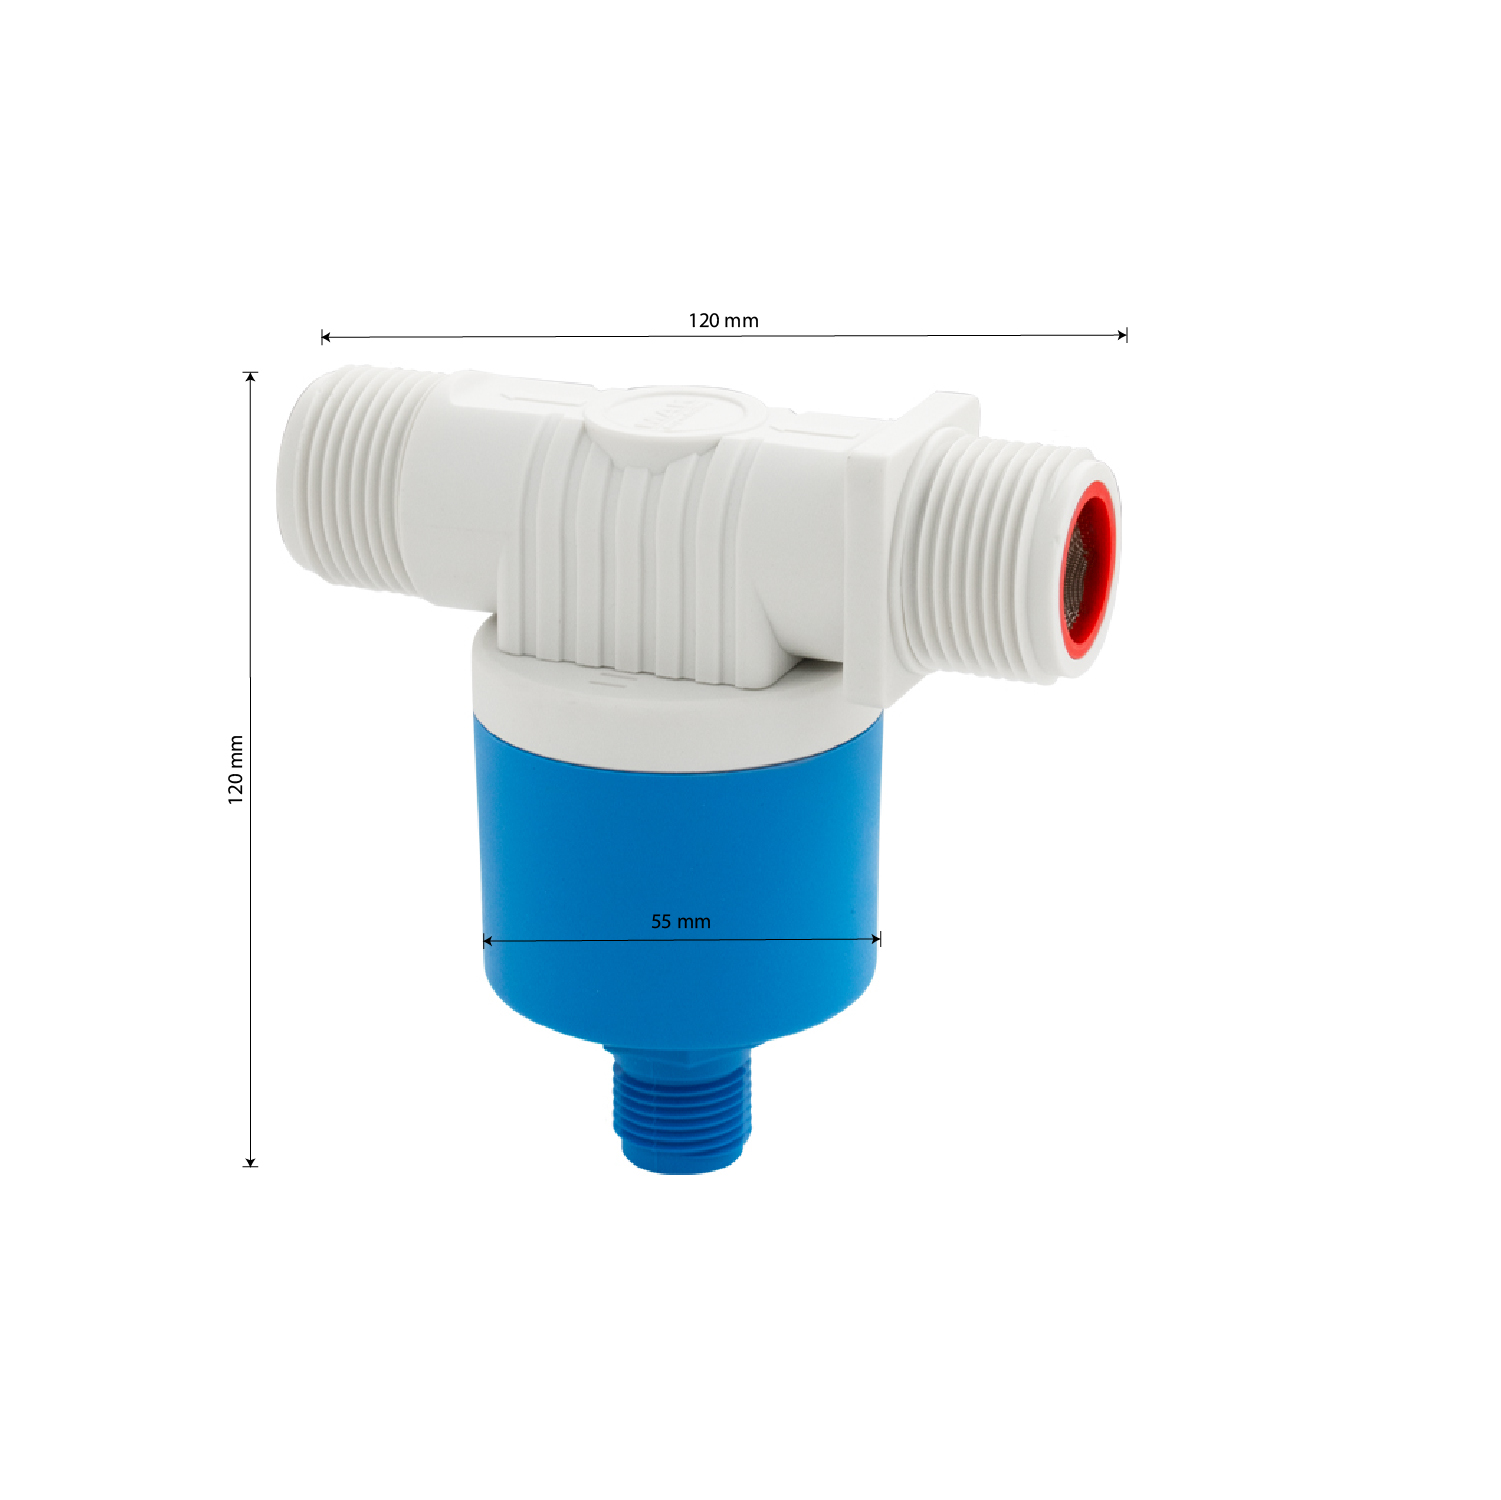 MAK - Поплавок - клапан НАРУЖНЫЙ, для ёмкостей, 1" из высокопрочного АБС пластика, боковое подключение для агрессивных жидкостей